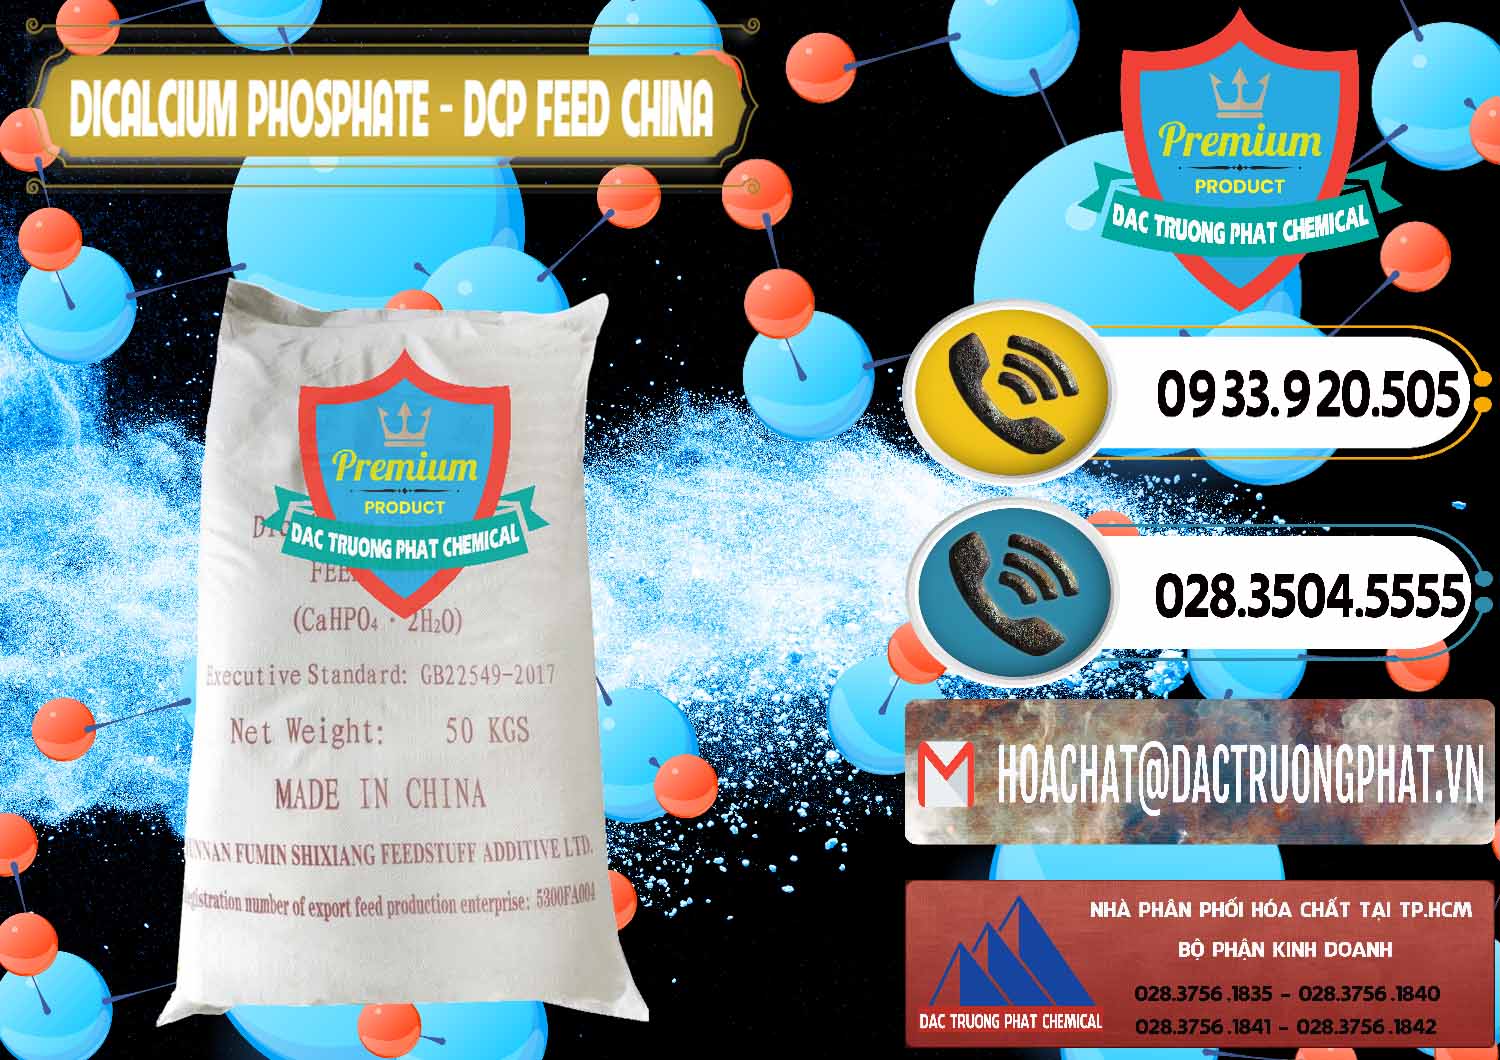 Cty kinh doanh & bán Dicalcium Phosphate - DCP Feed Grade Trung Quốc China - 0296 - Chuyên cung ứng - phân phối hóa chất tại TP.HCM - hoachatdetnhuom.vn